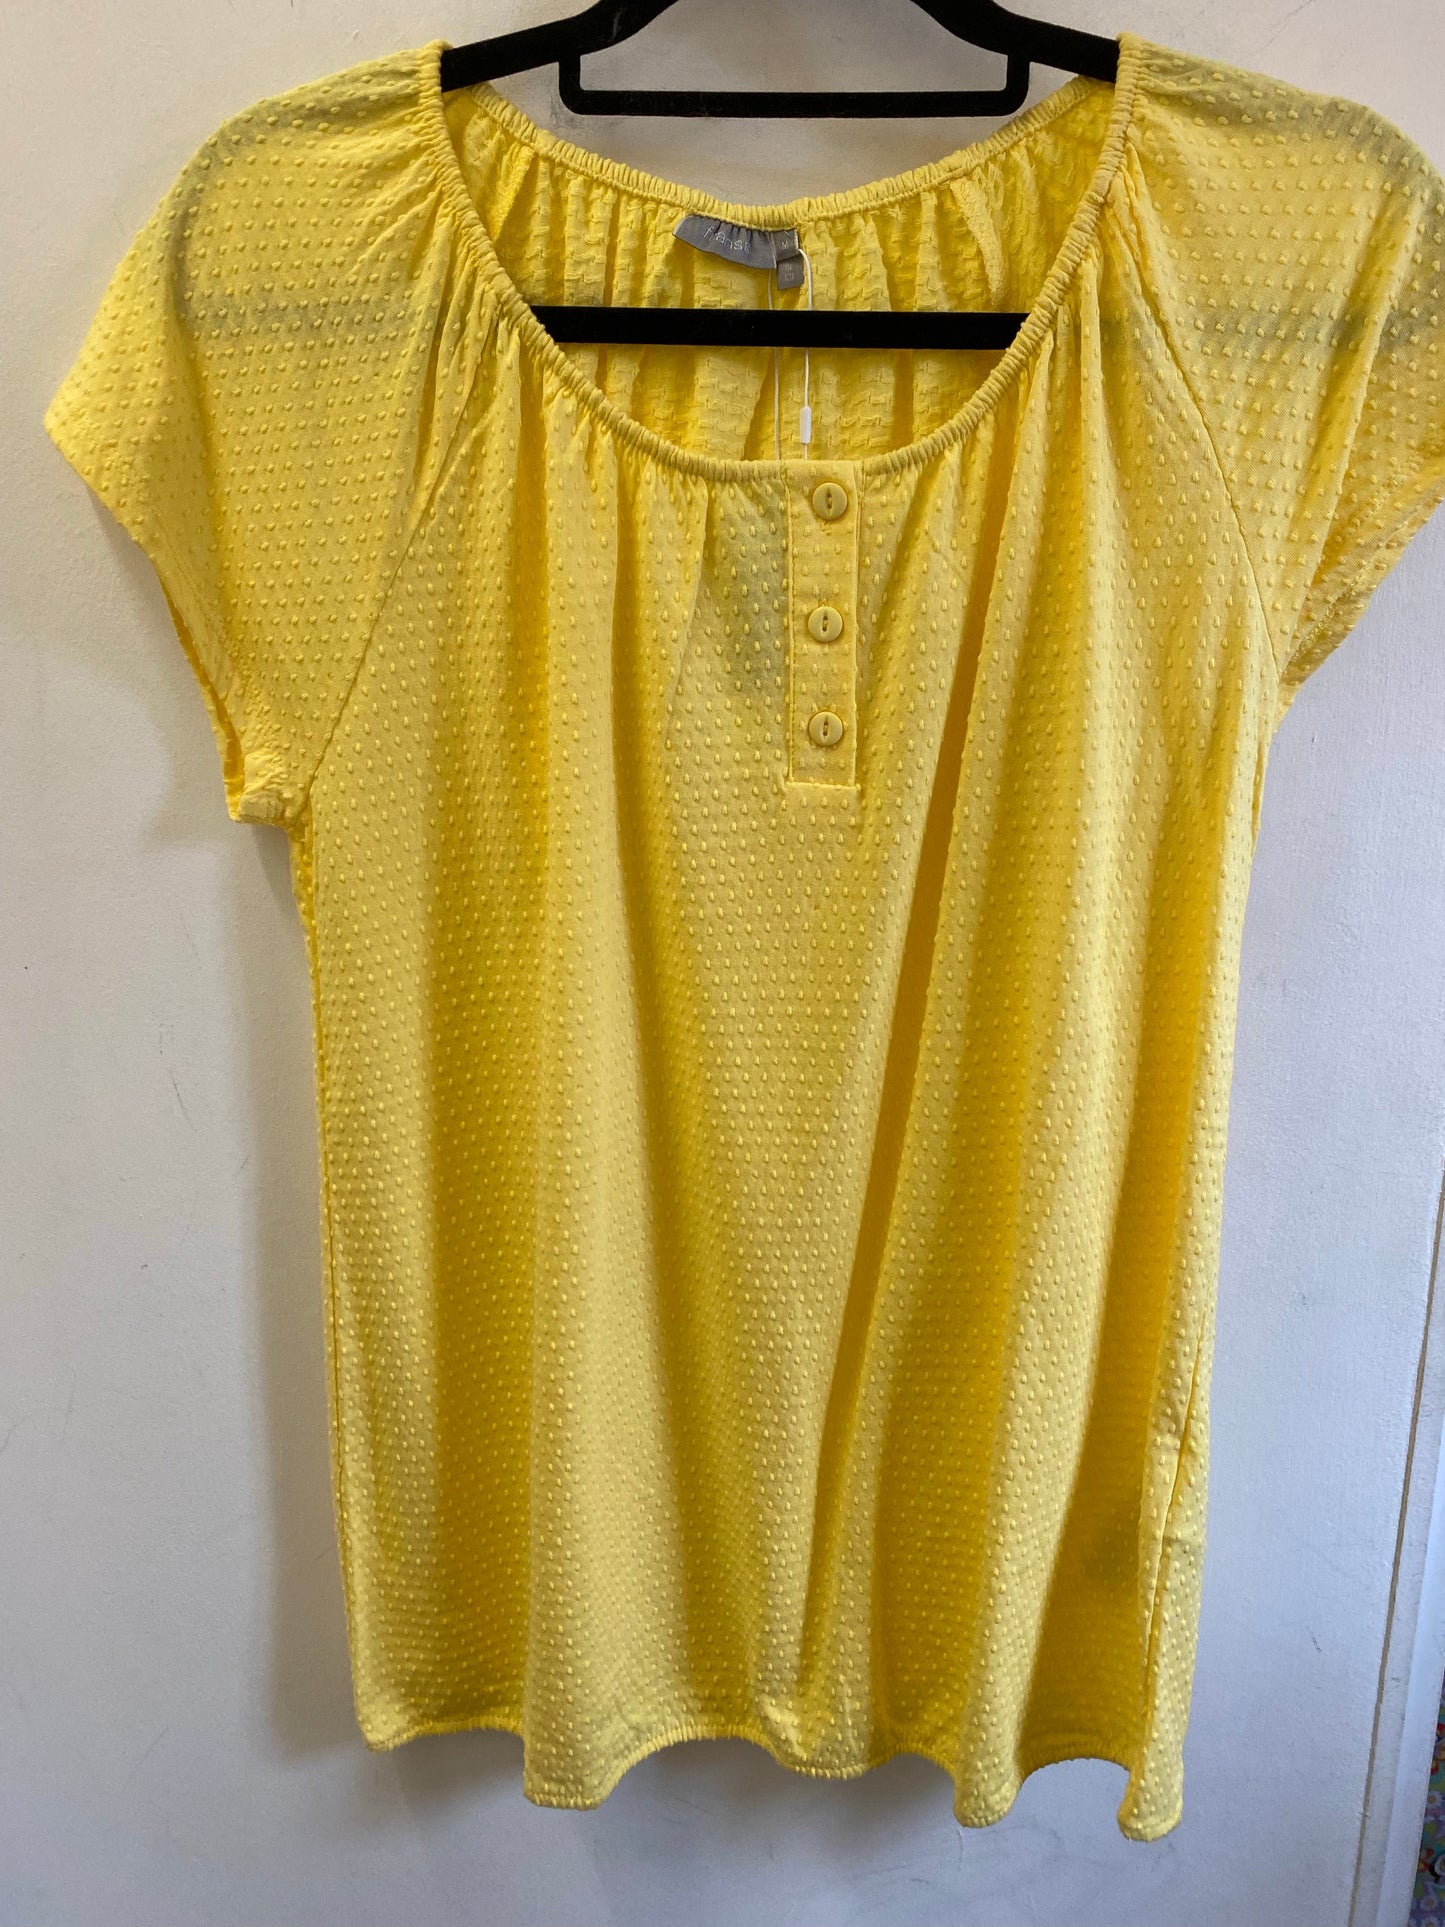 *Frvedobby Yellow Textured T-Shirt*